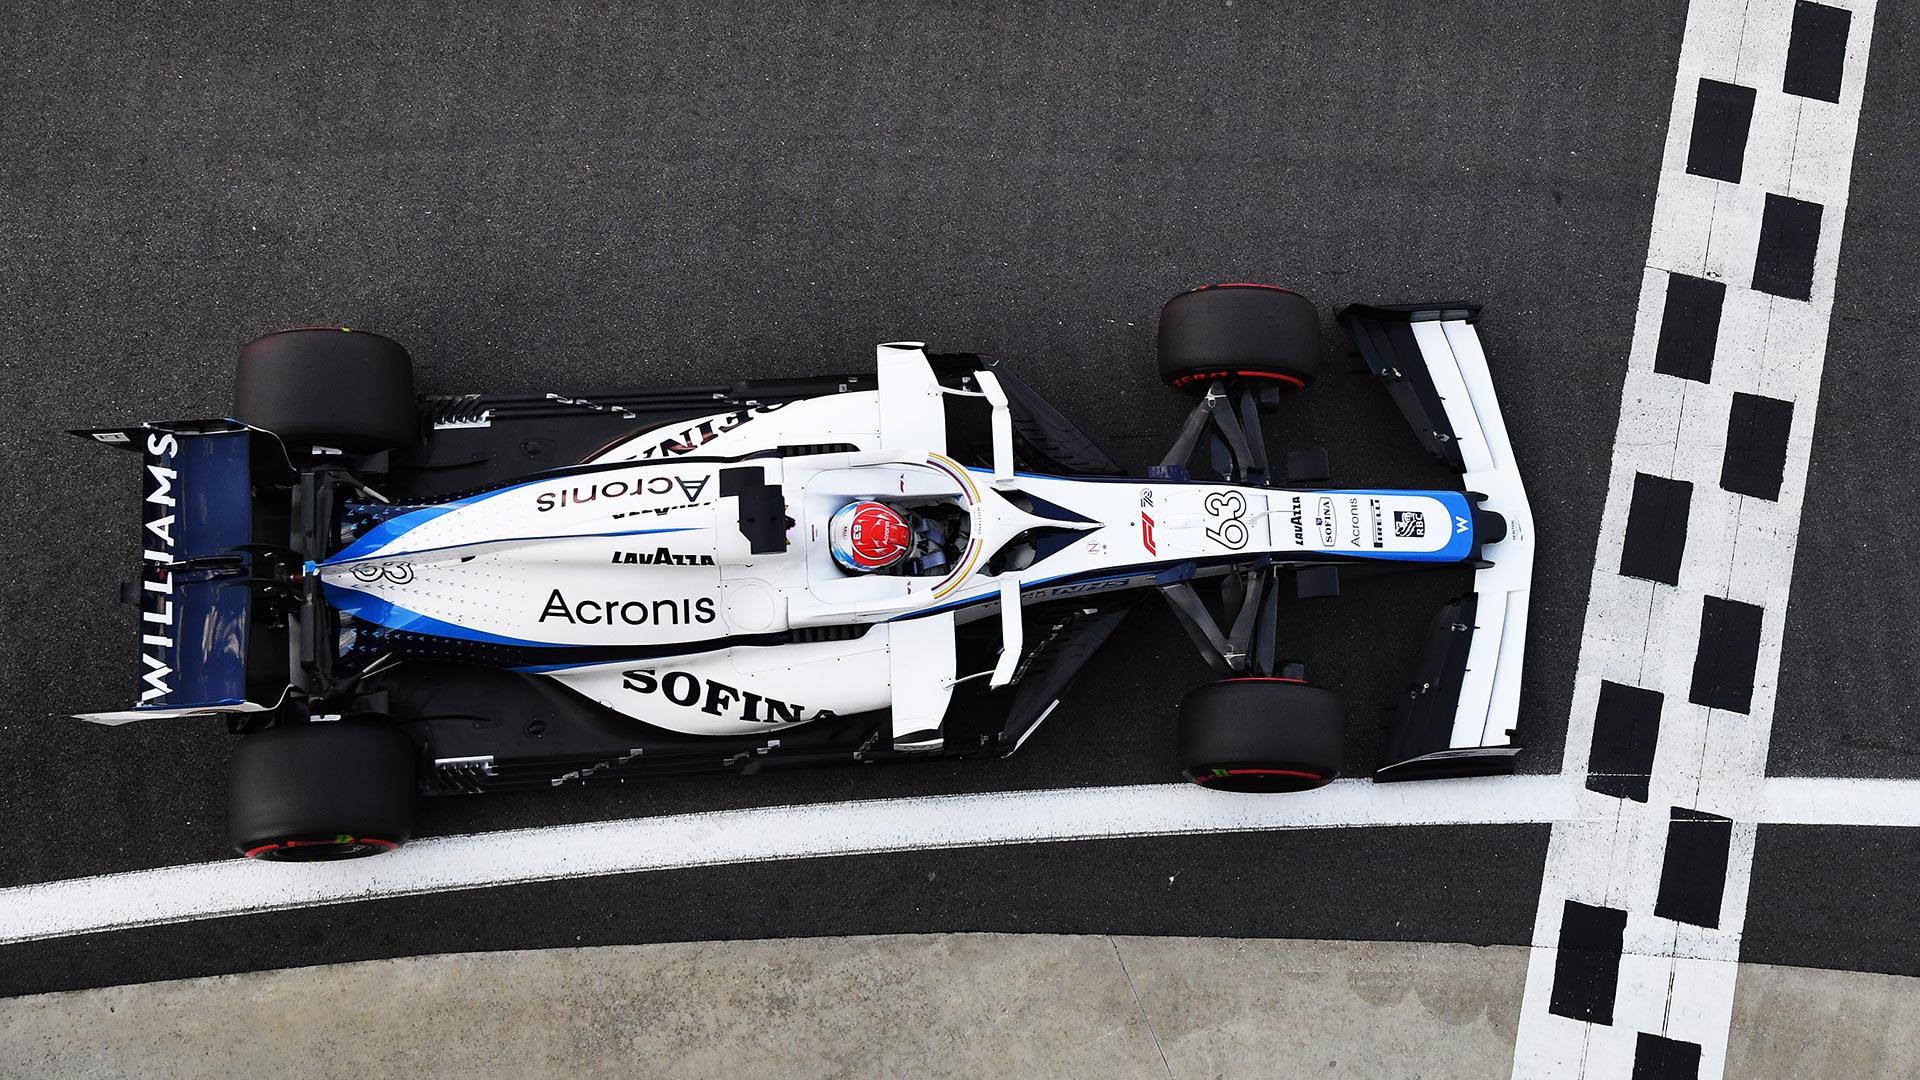 Williams Racing Formula 1 Takımının aracının pistteki durumunu gösteren görsel.